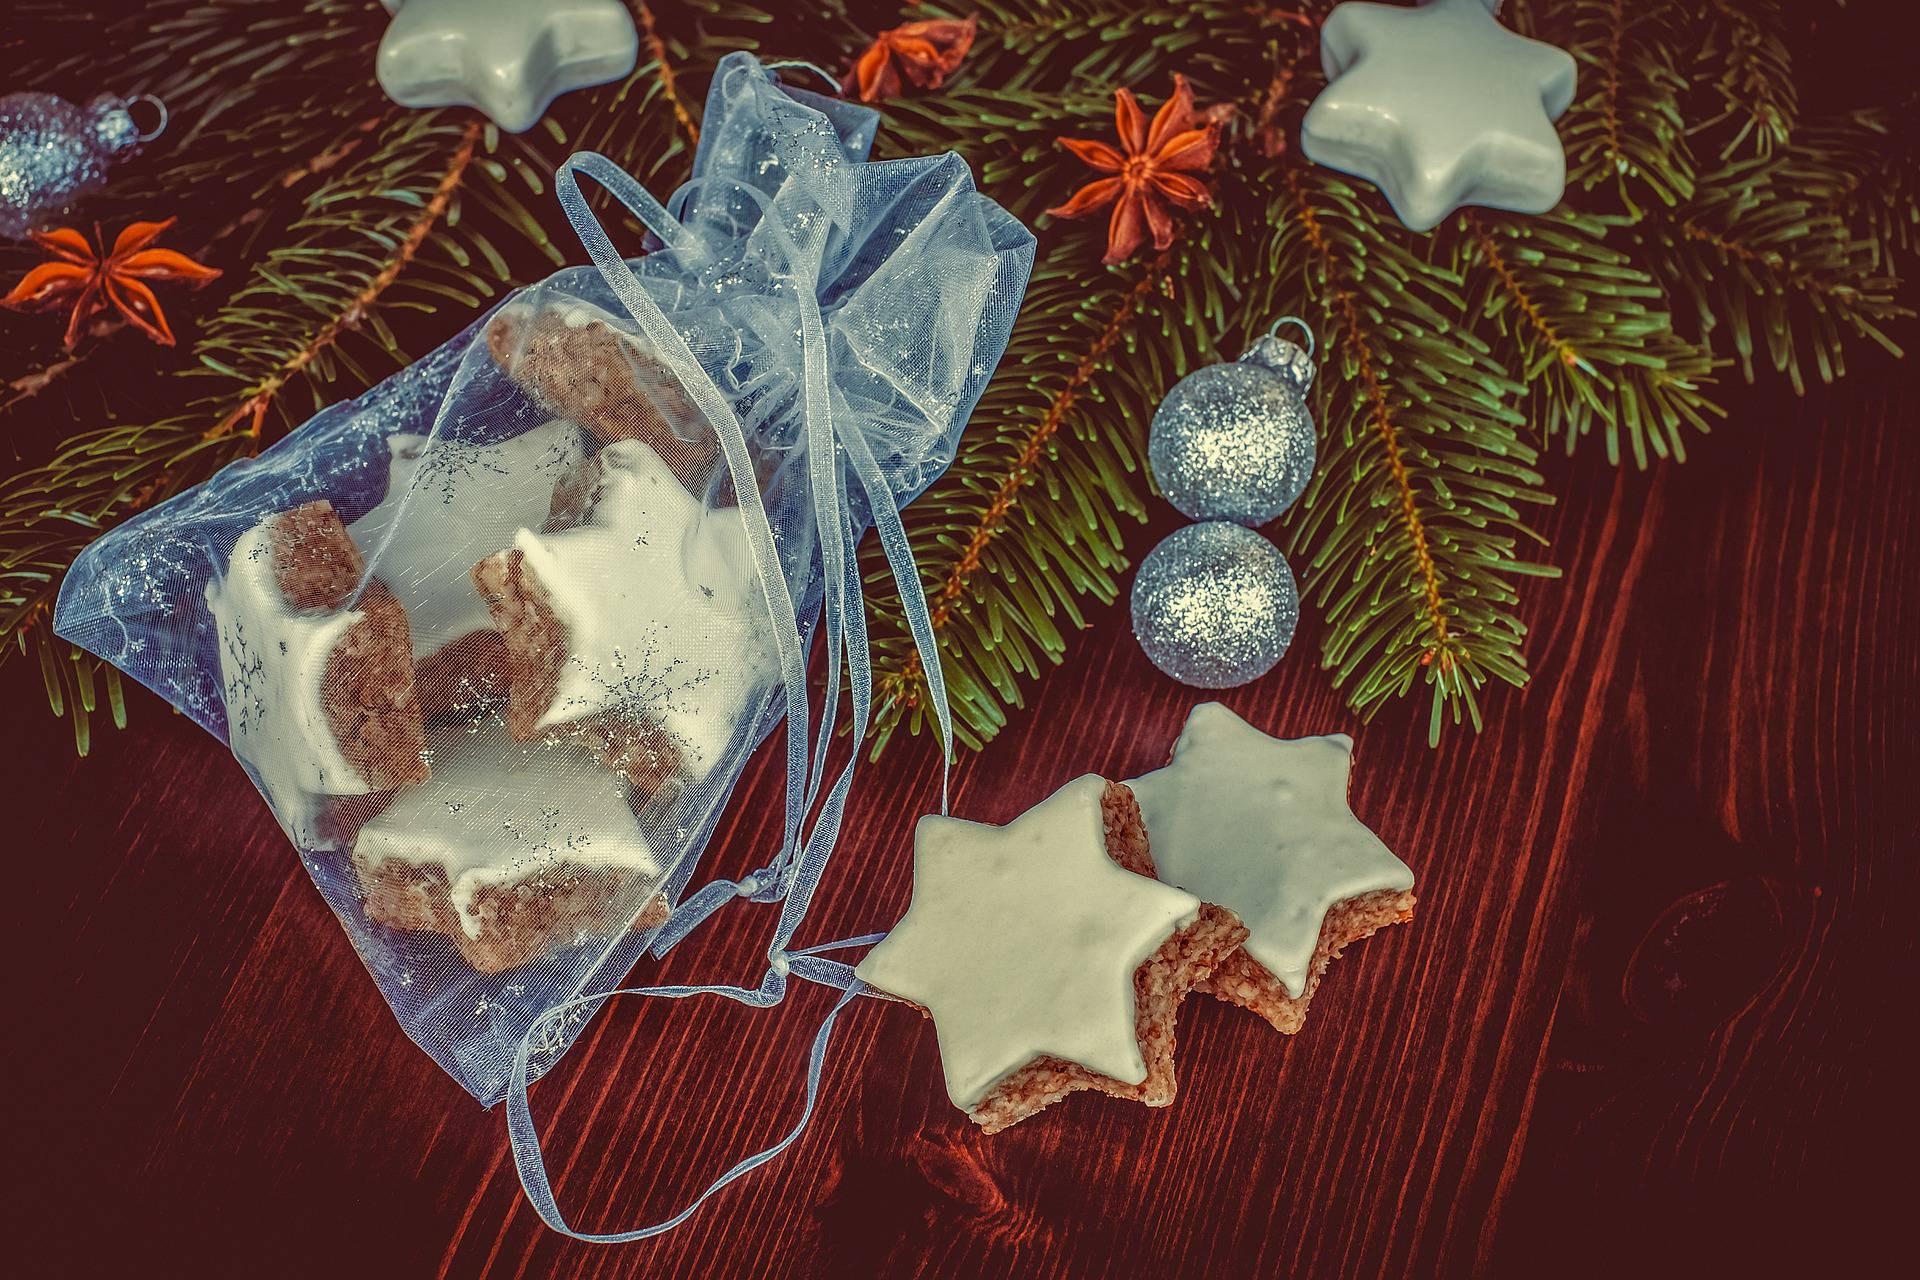 Regalare A Natale.Biscotti Da Regalare A Natale 10 Ricette Creative E Veloci